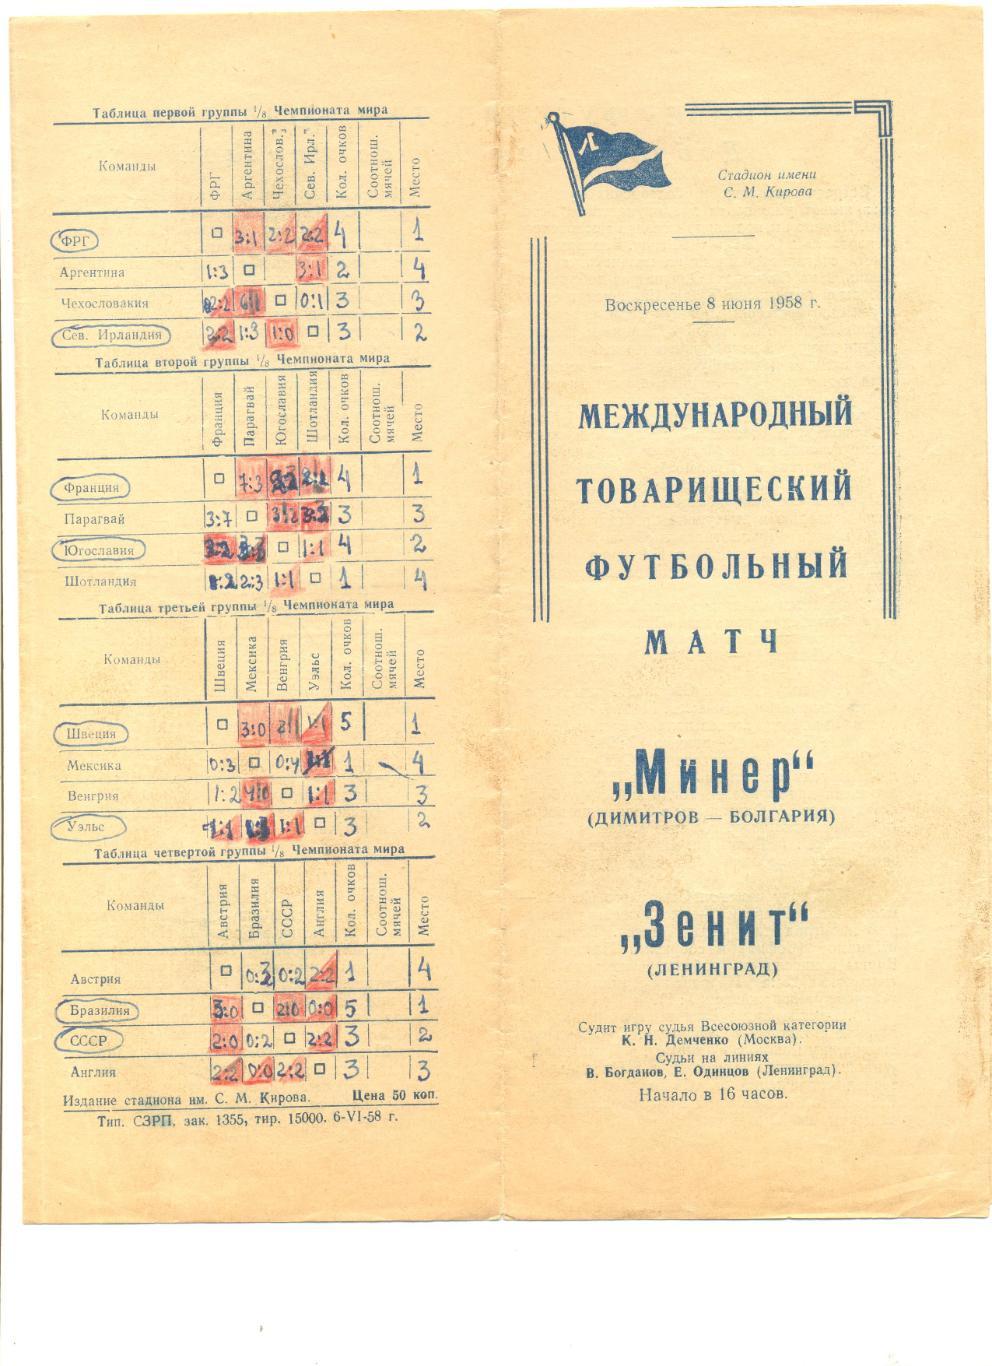 Зенит Ленинград - Минер Димитров, Болгария 09.06.1958 г.